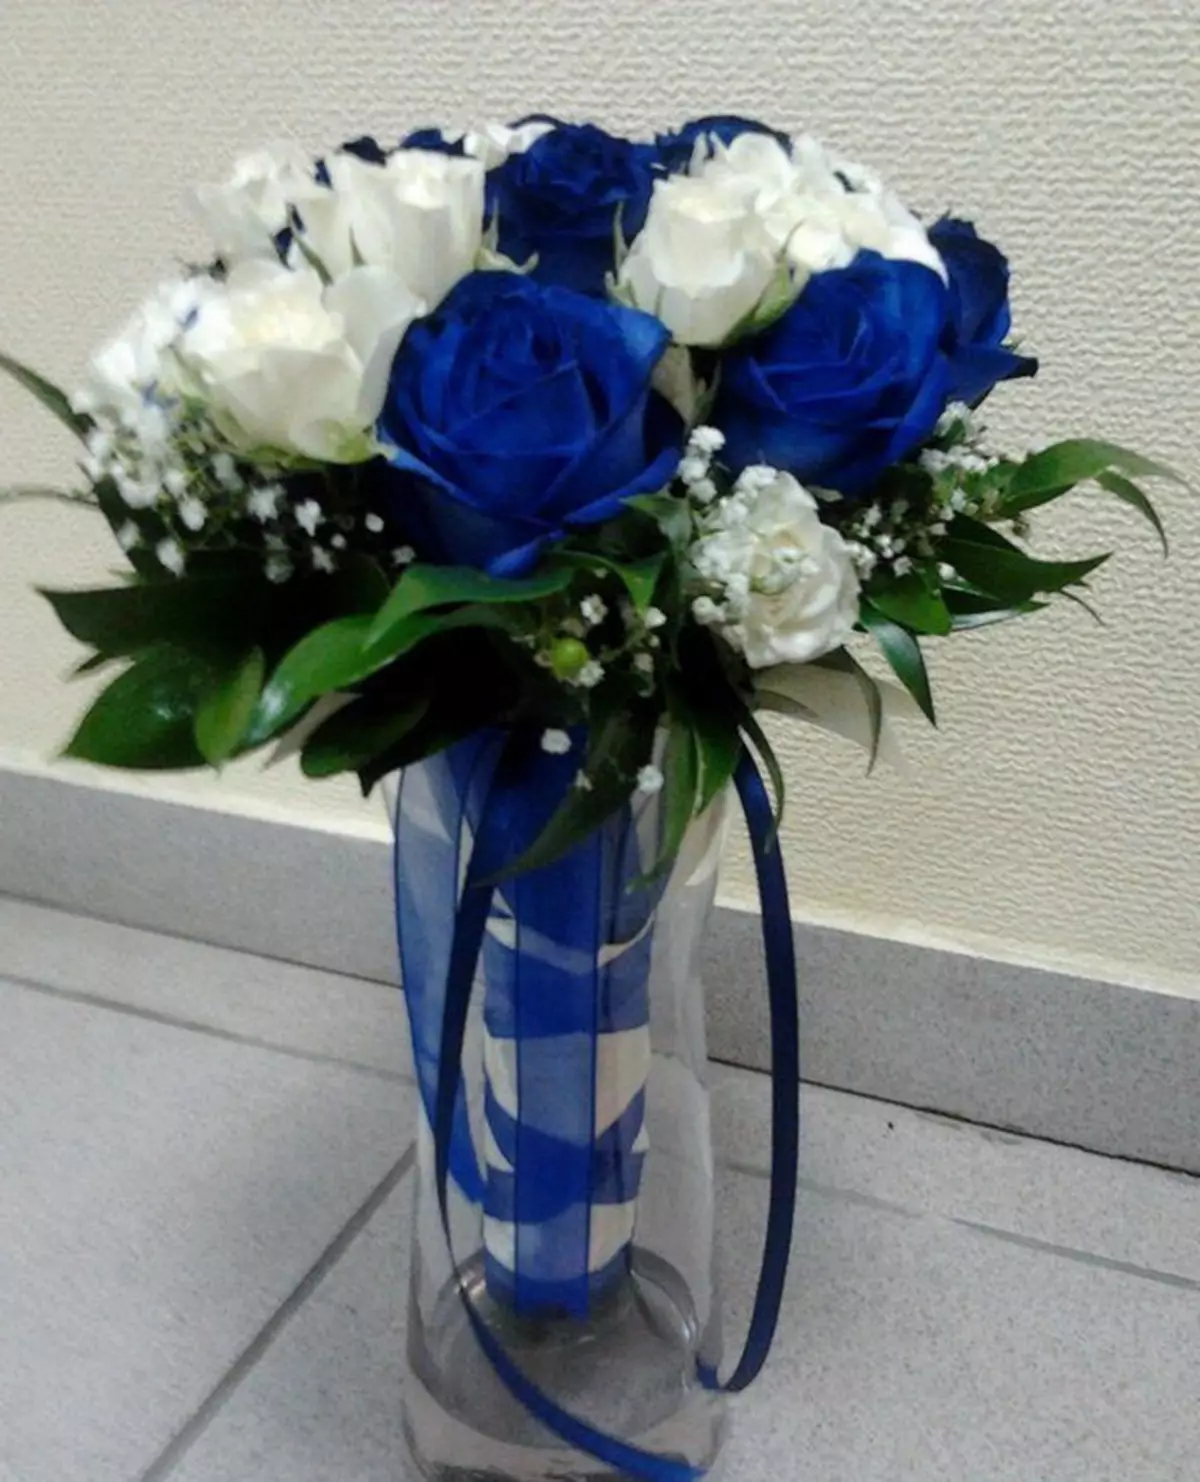 Свадебный букет из белых и синих роз